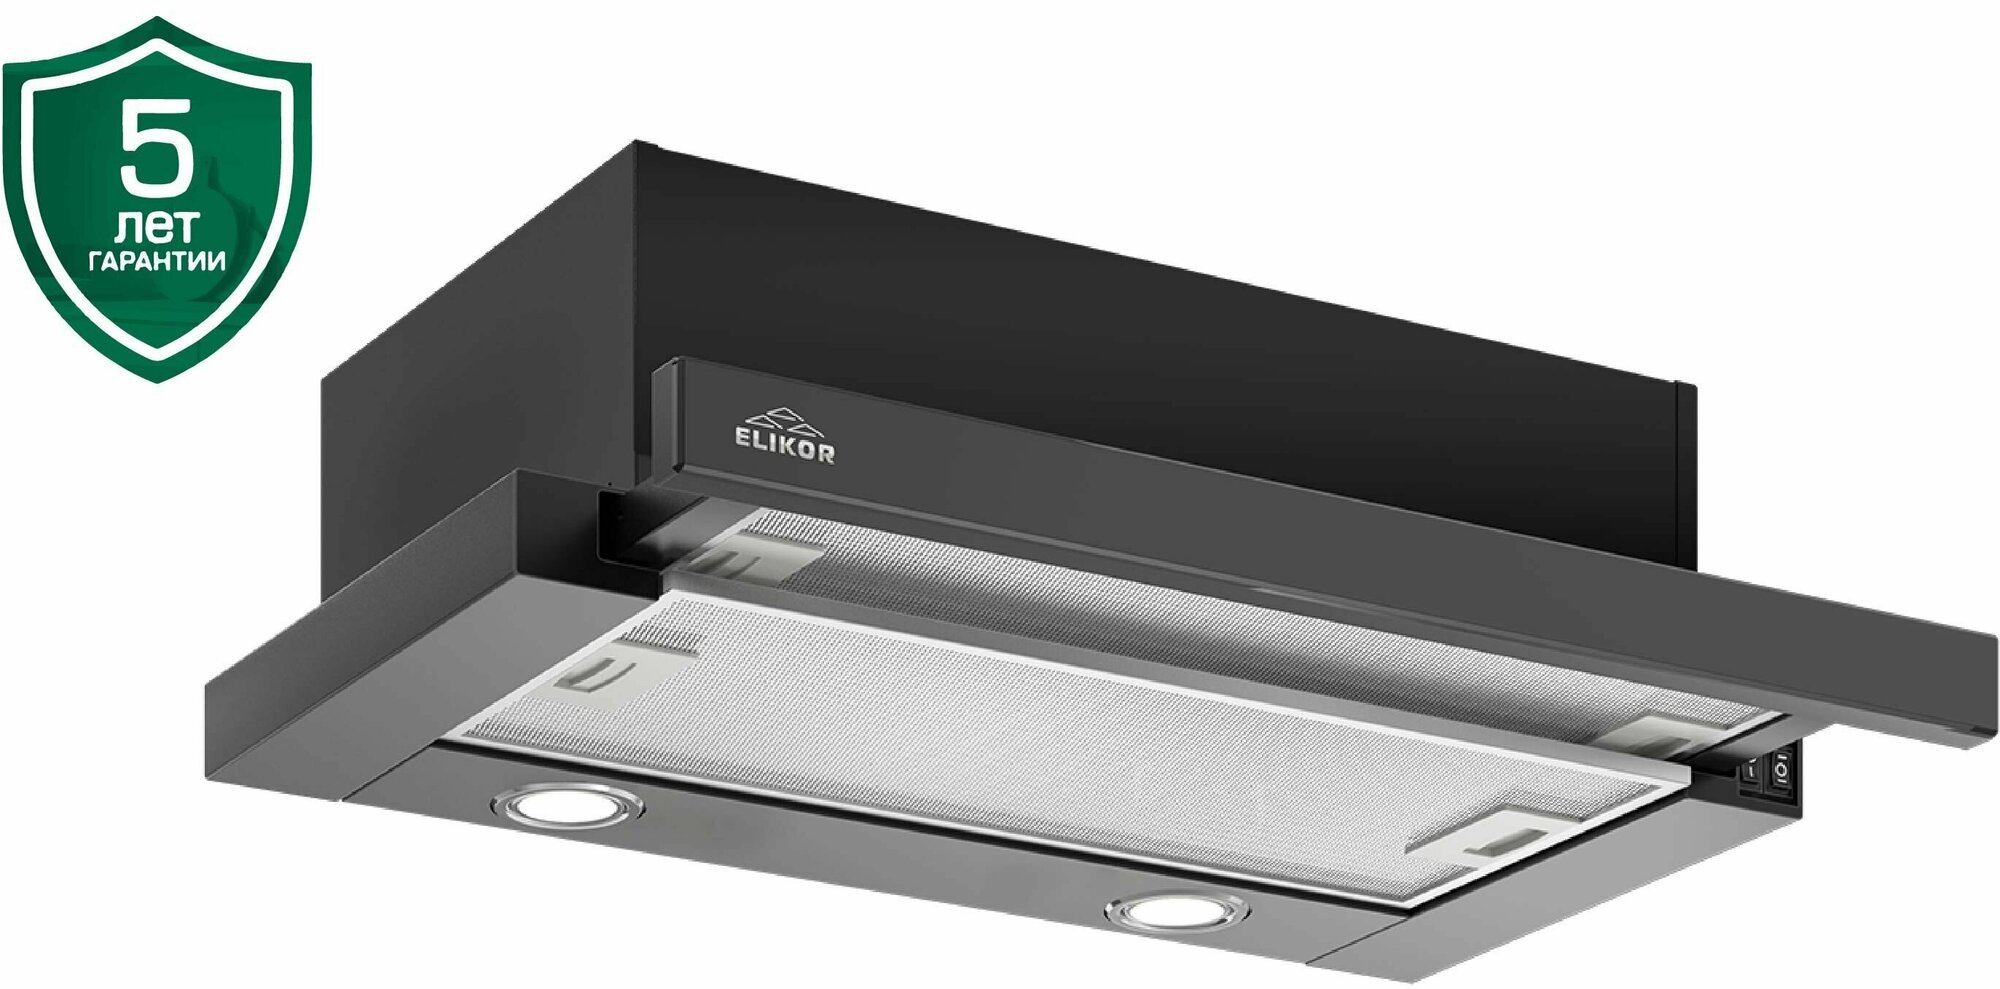 Кухонная вытяжка Elikor: Интегра GLASS 60П-400-В2Л черный/стекло черное.